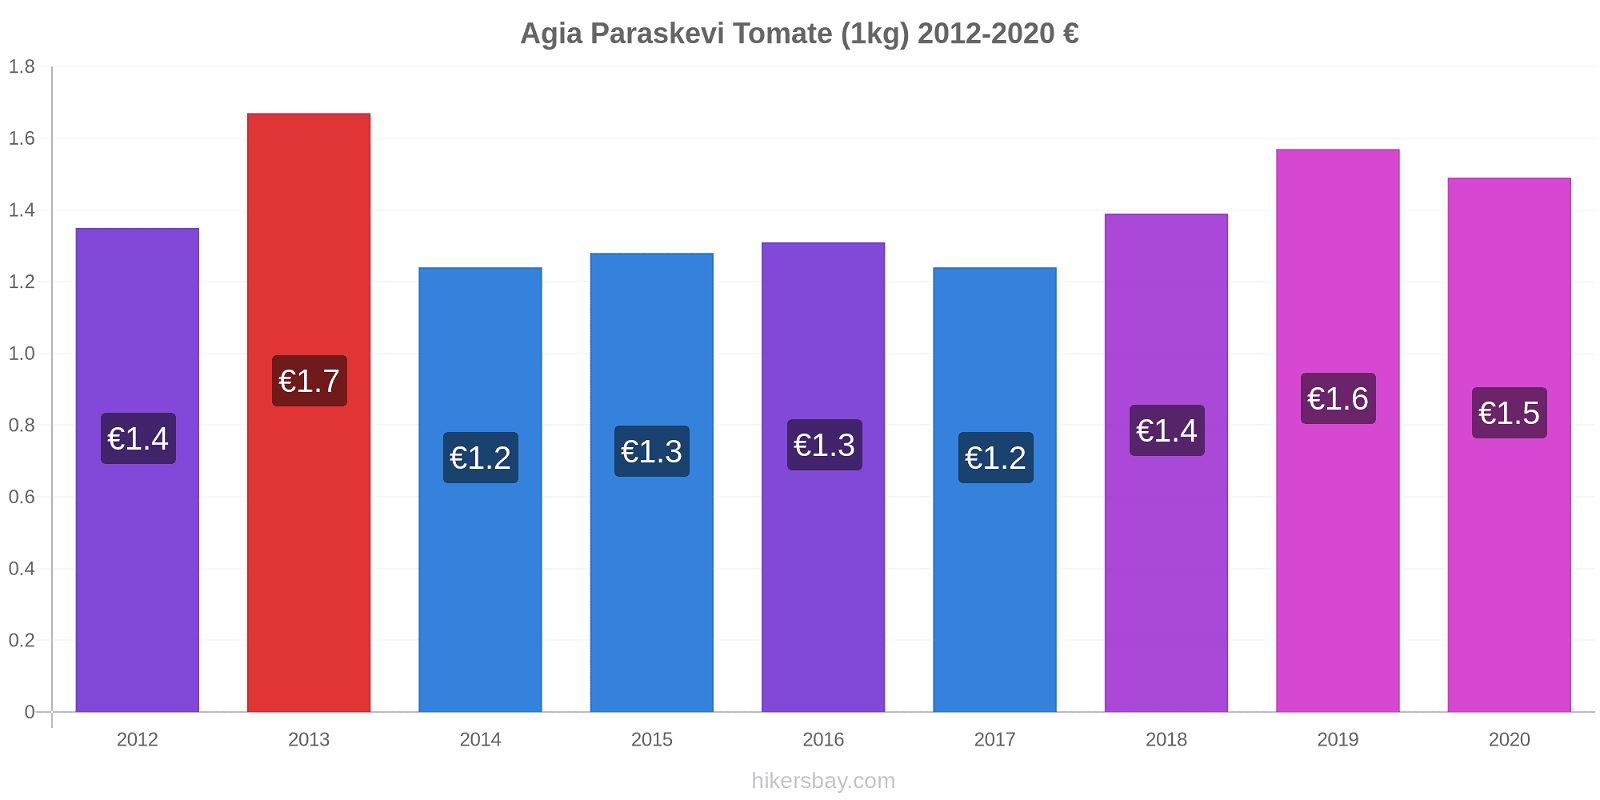 Agia Paraskevi changements de prix Tomate (1kg) hikersbay.com